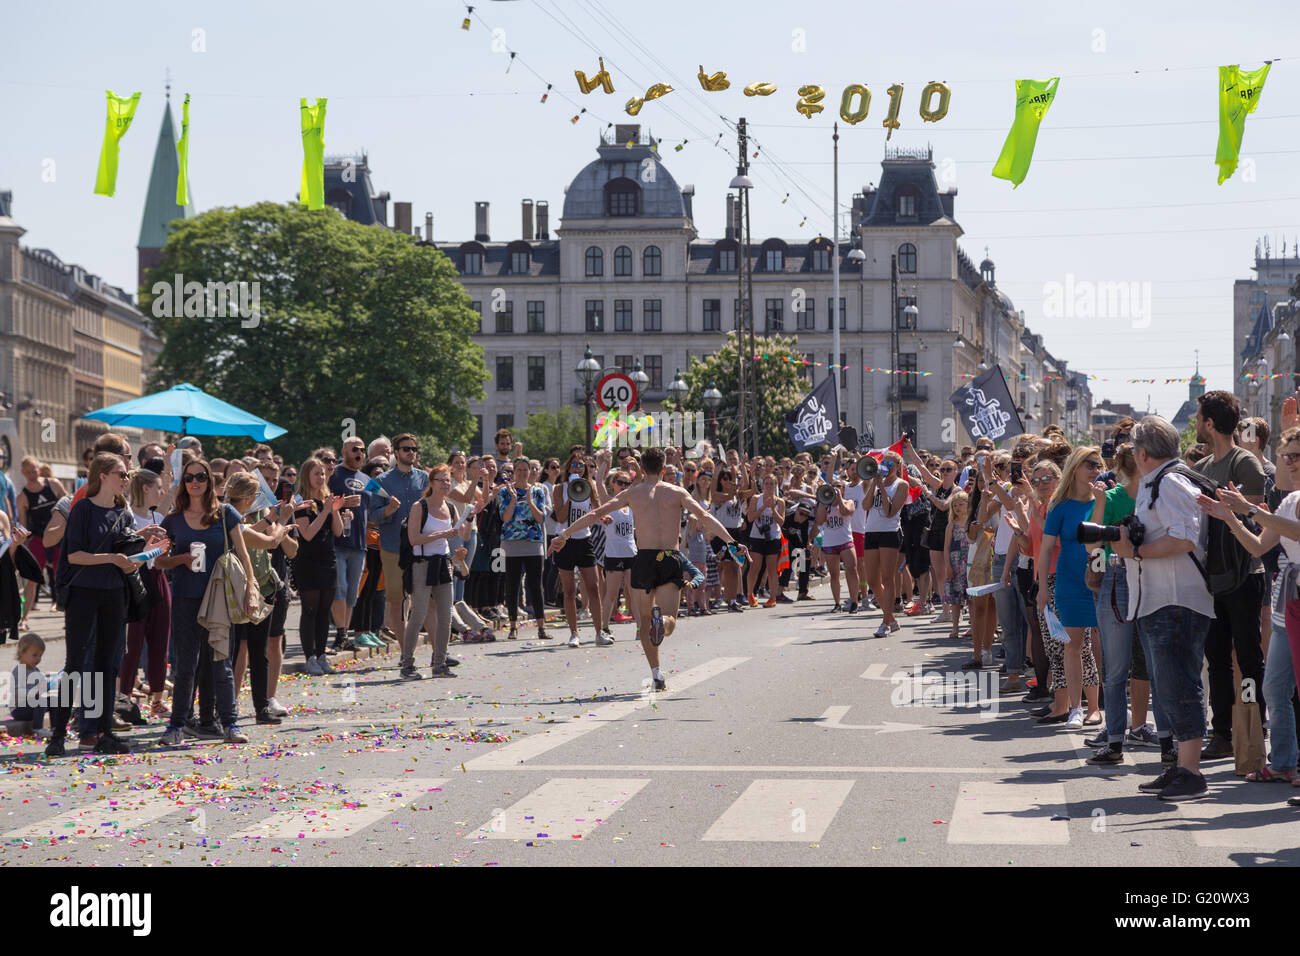 Kopenhagen, Dänemark - 22. Mai 2016: Läufer auf der jährlichen Veranstaltung Kopenhagen Marathon. Stockfoto